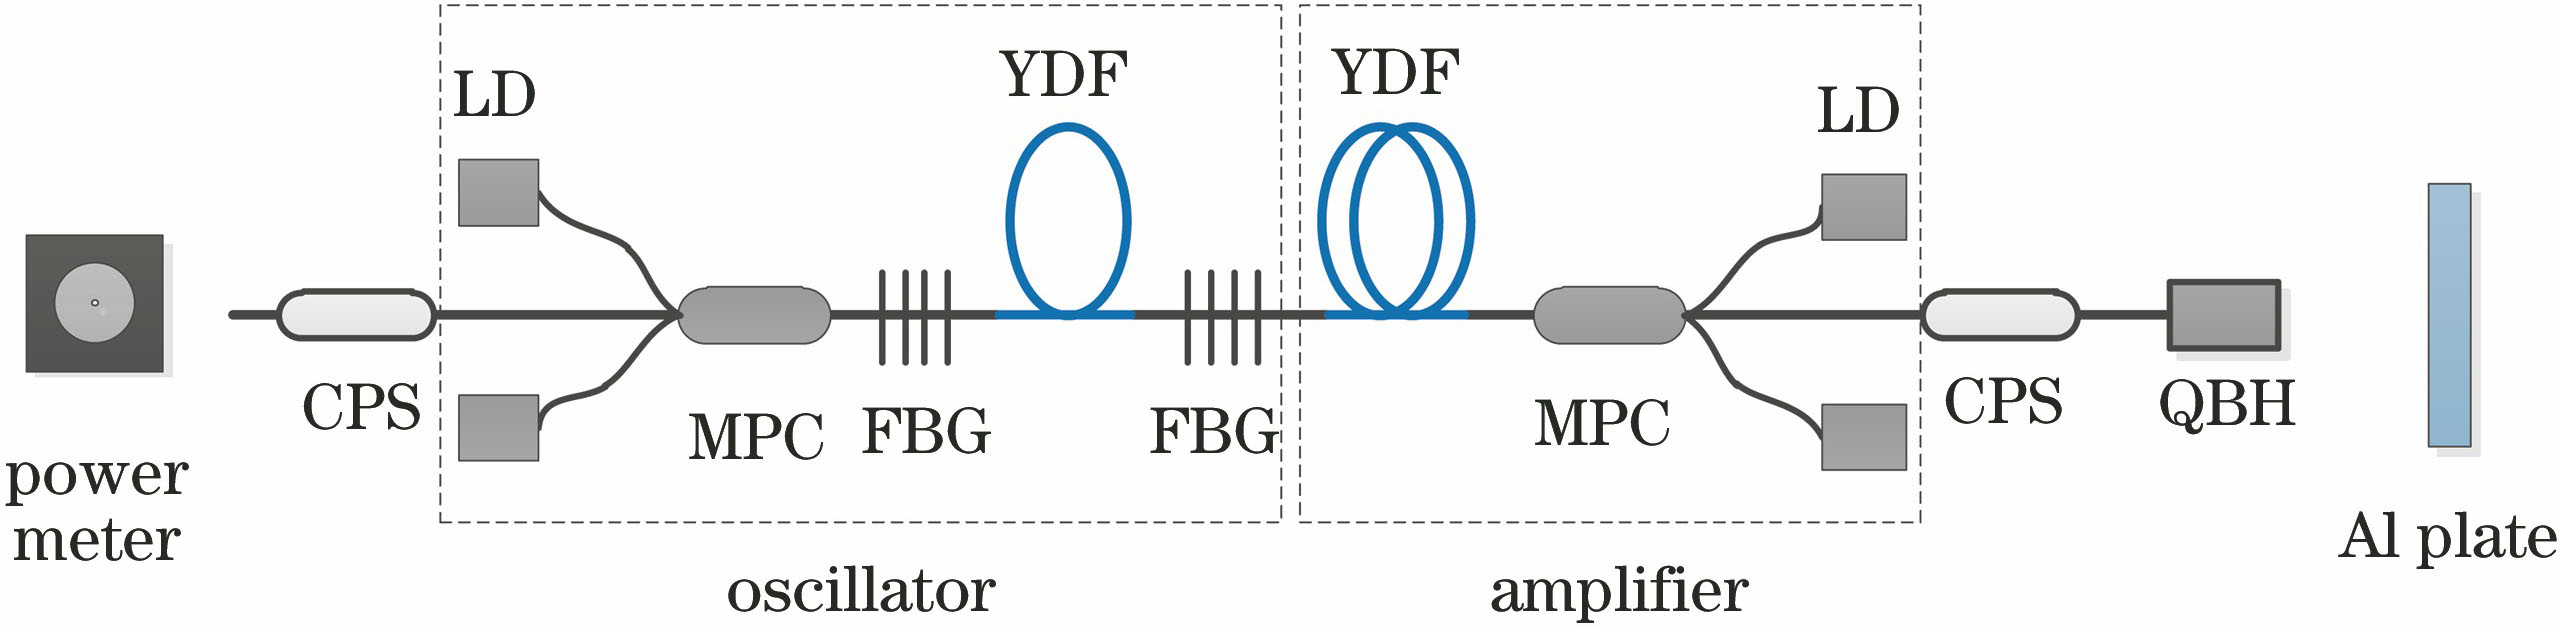 Schematic of oscillator-amplifier integration of all-fiber laser system